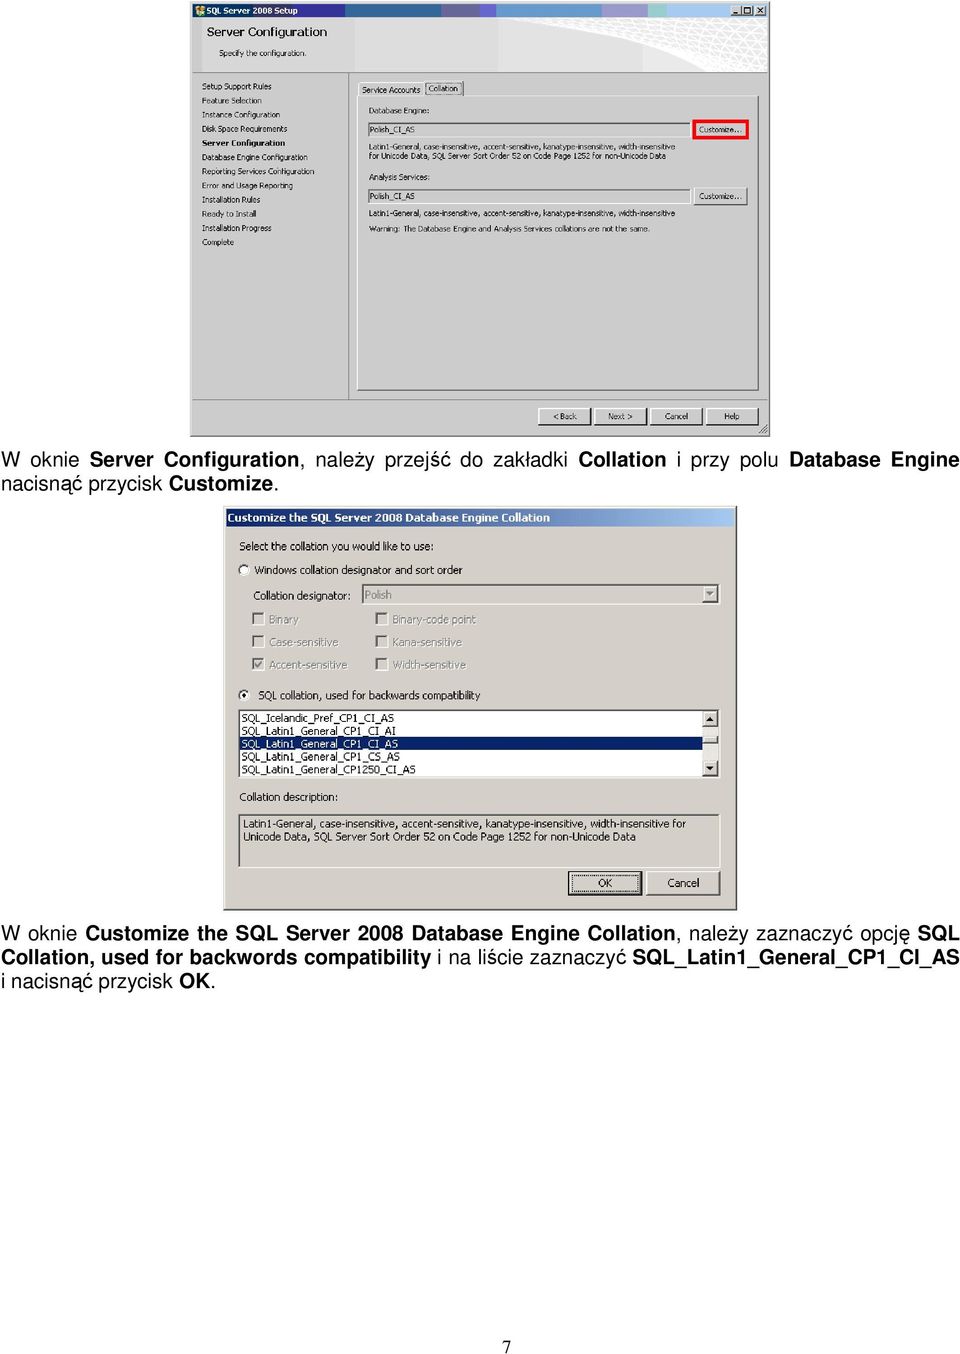 W oknie Customize the SQL Server 2008 Database Engine Collation, naleŝy zaznaczyć